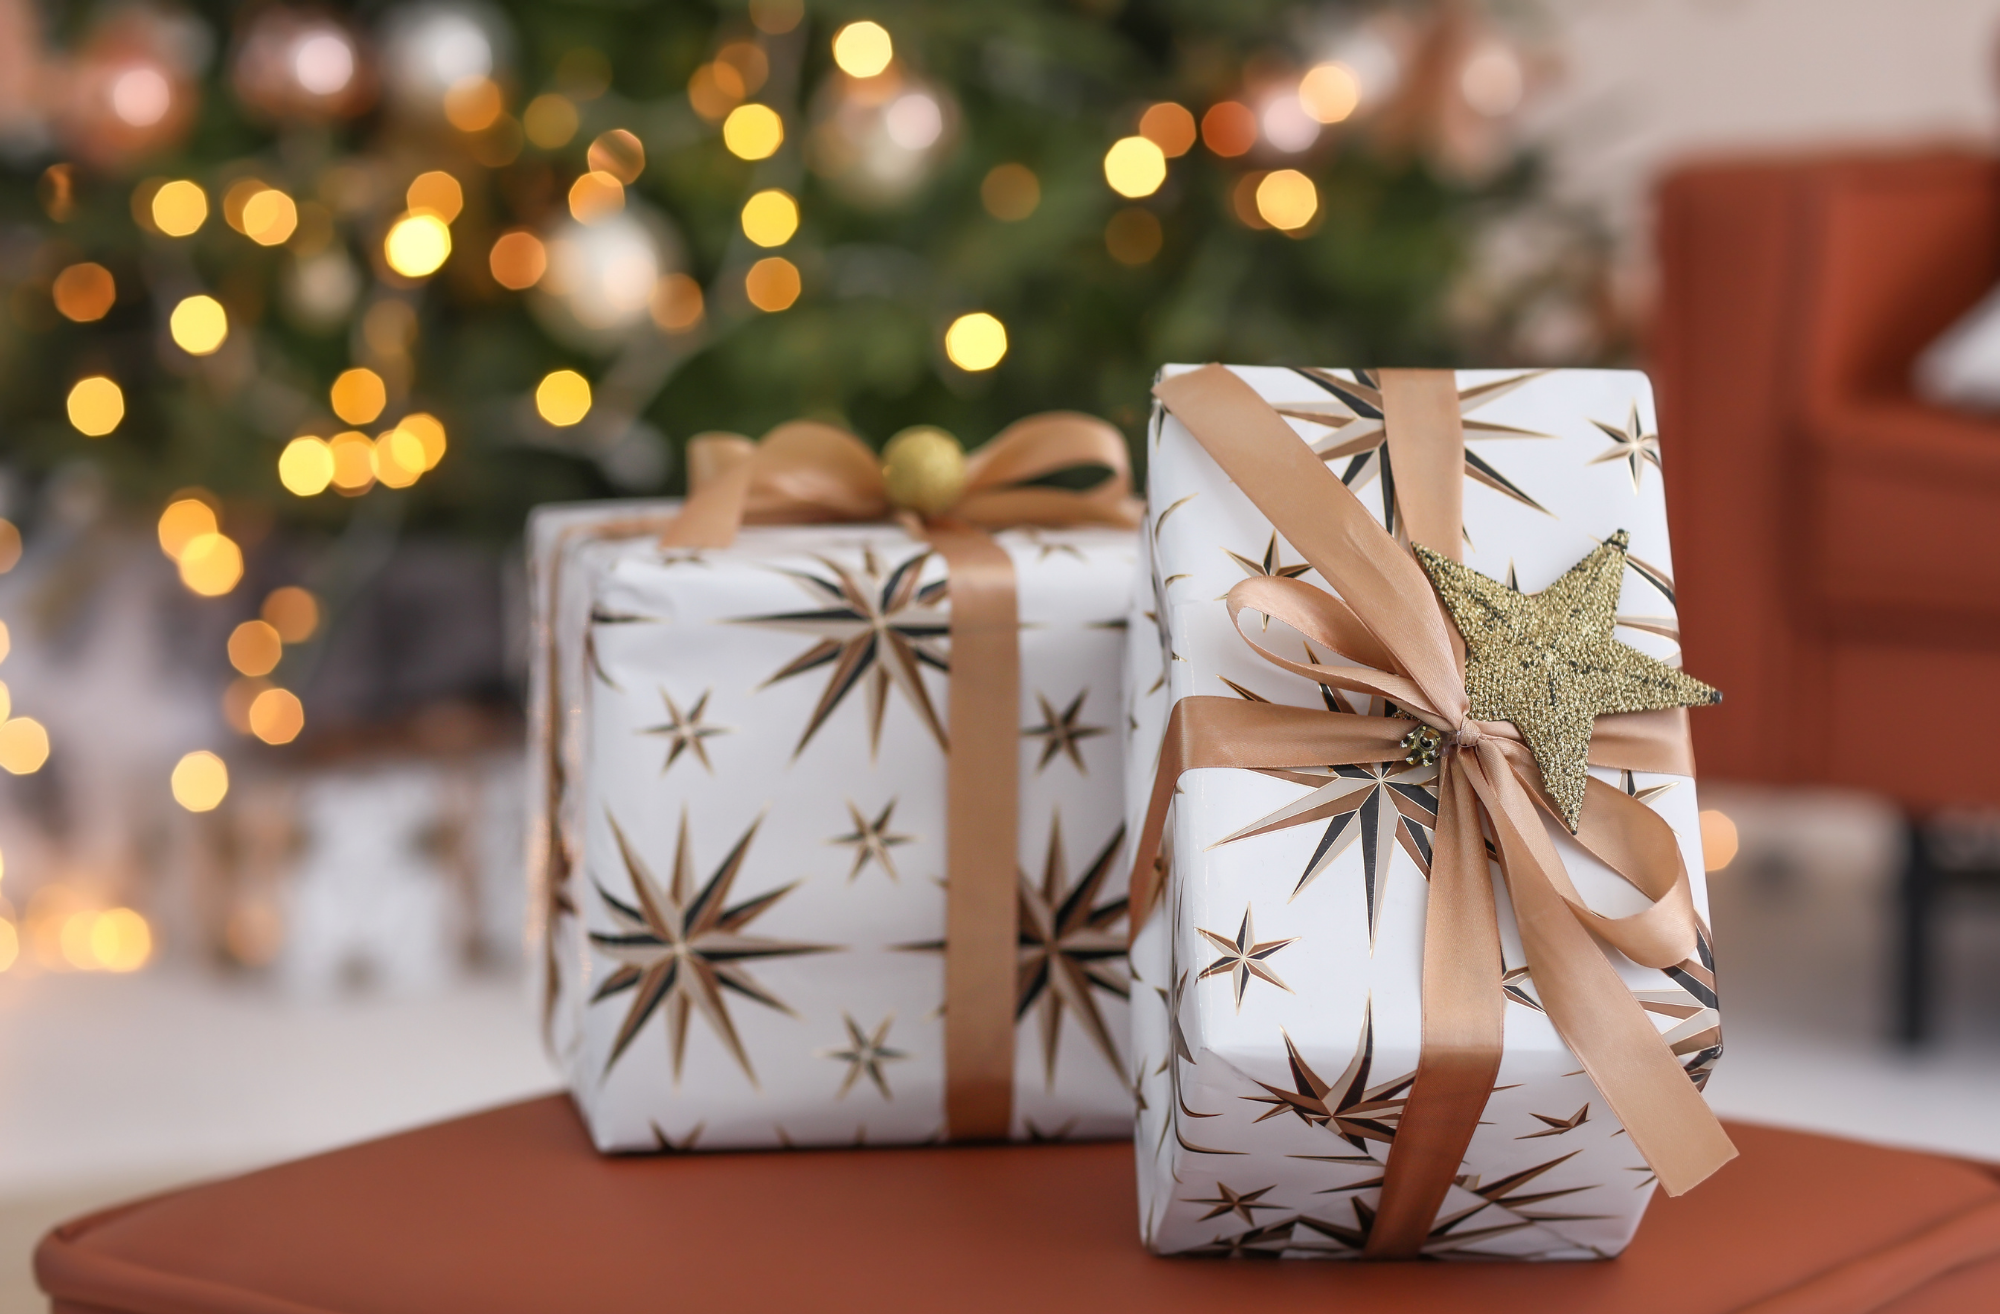 Cadeaux de Noël : Trouvez l'idée cadeau idéale (2)